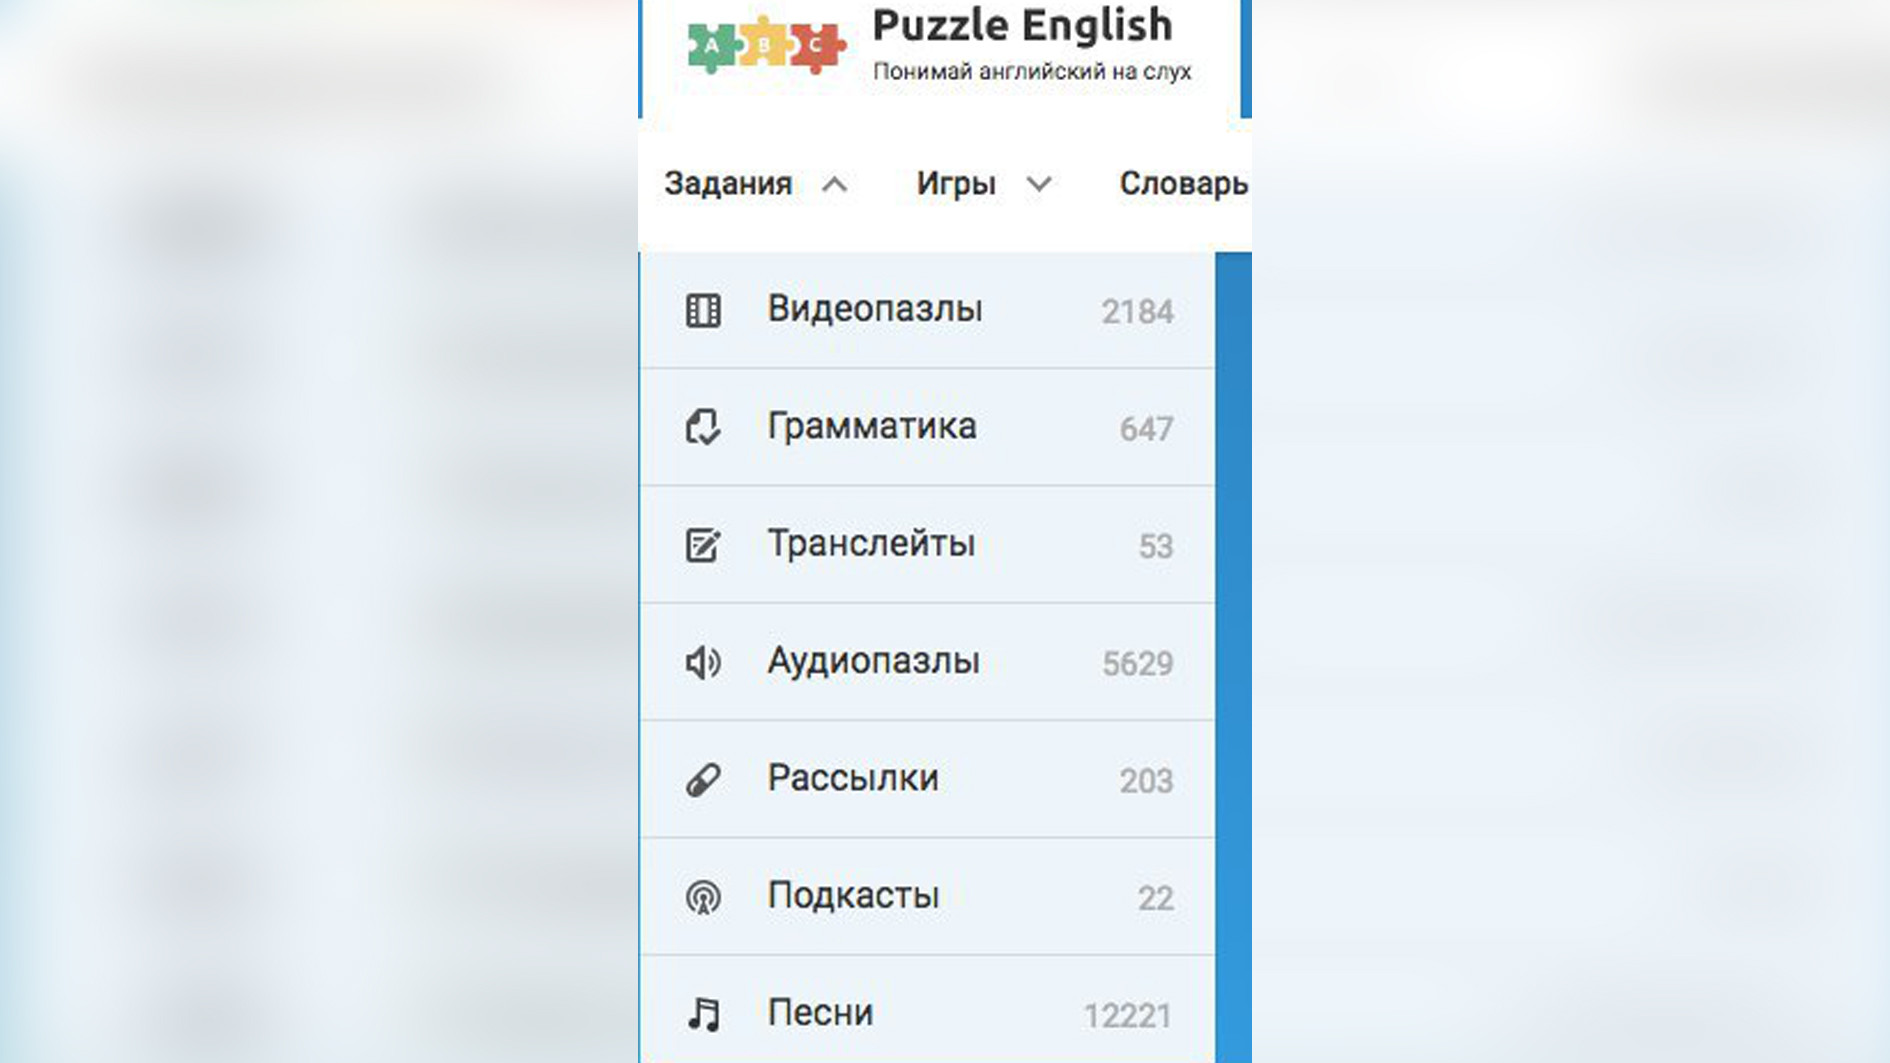 Абонемент Puzzle English. Фото: puzzle-english.com